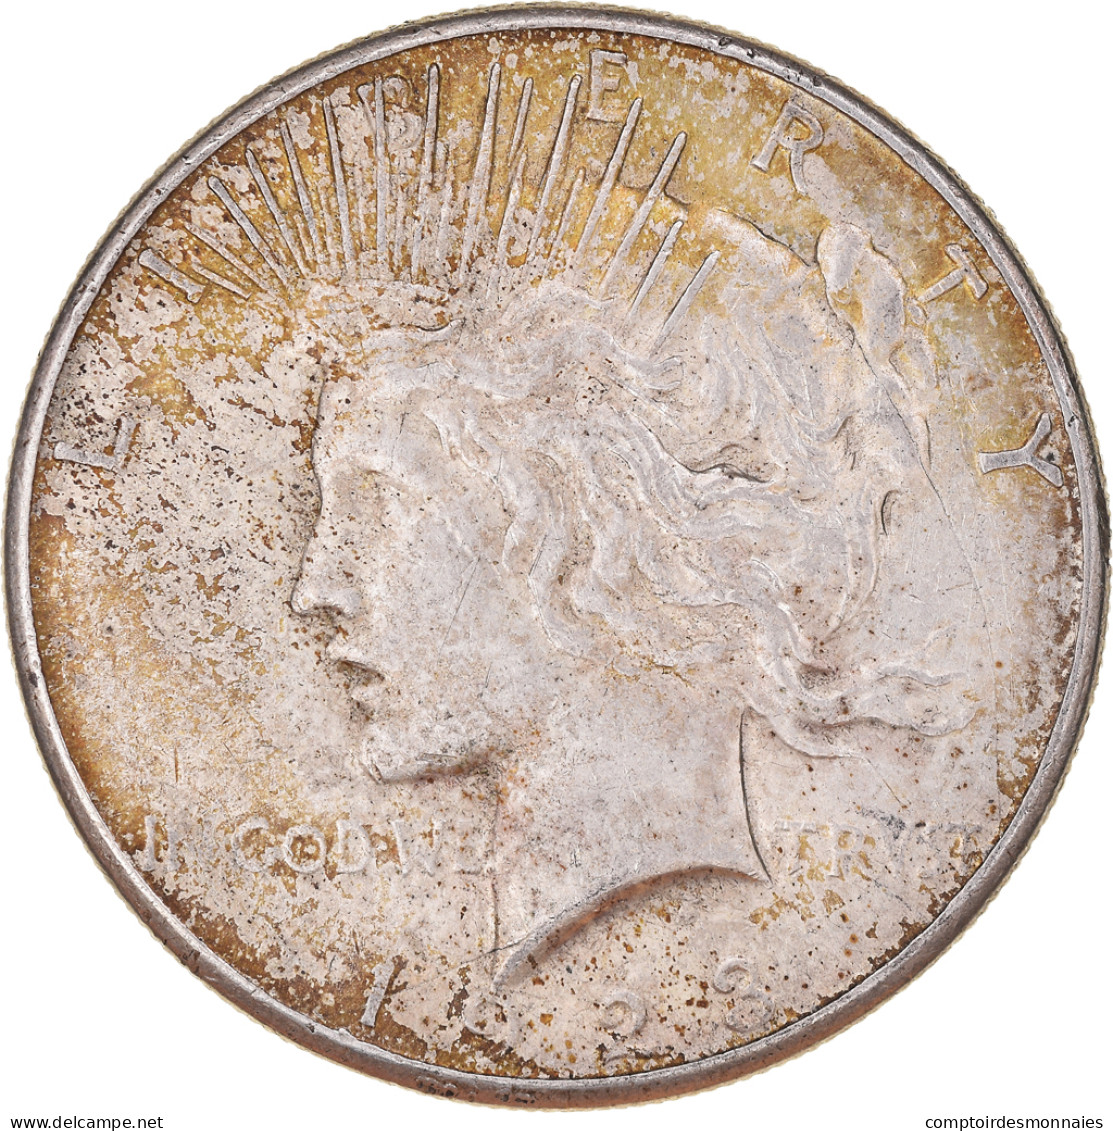 Monnaie, États-Unis, Dollar, 1923, U.S. Mint, San Francisco, TTB, Argent - 1921-1935: Peace (Paix)